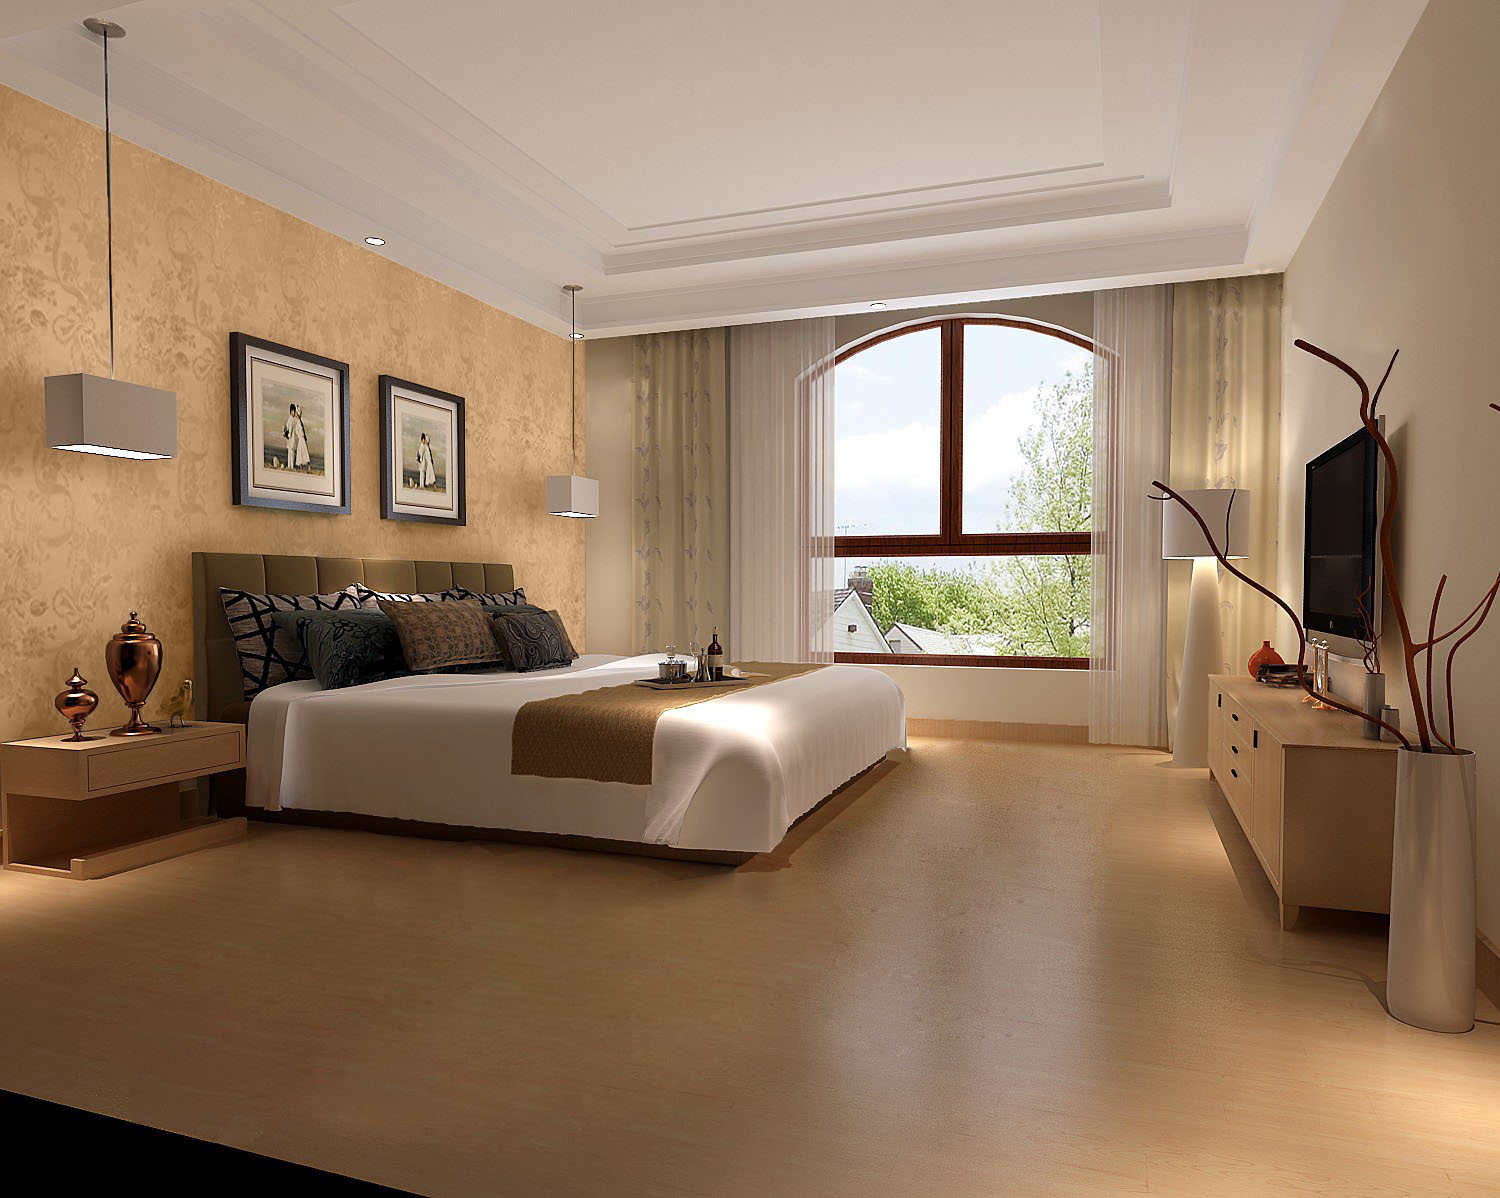 复式公寓 白领 小资 复古 简约 欧式 别墅 卧室图片来自重庆高度国际装饰工程有限公司在中铁花语城-简欧的分享